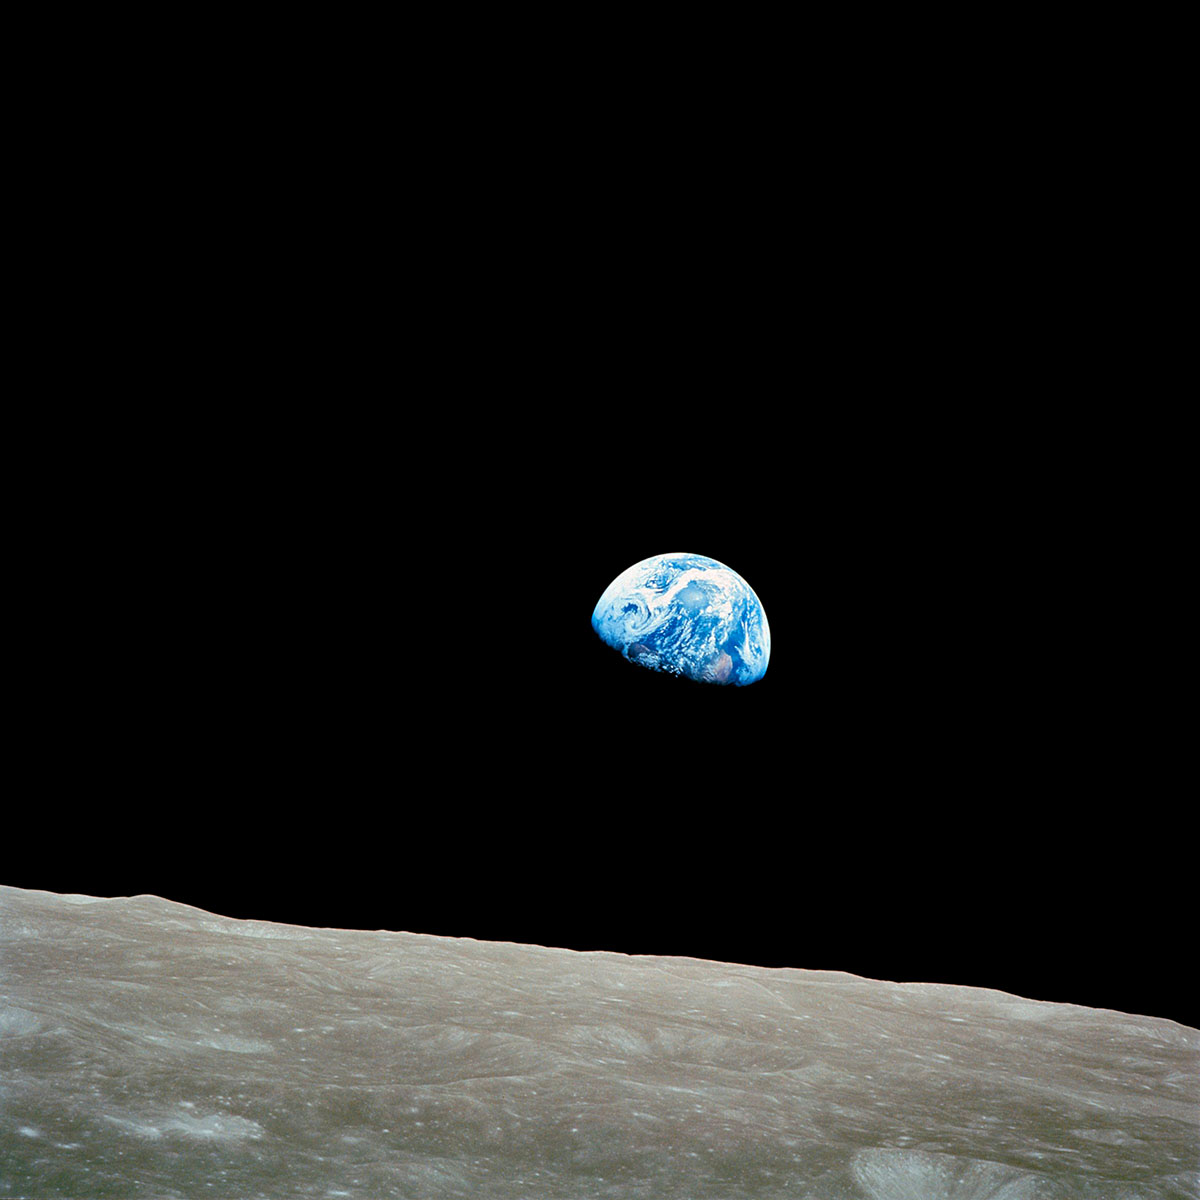 57245655 – Foto: KEYSTONE/Science Photo Library/NASA